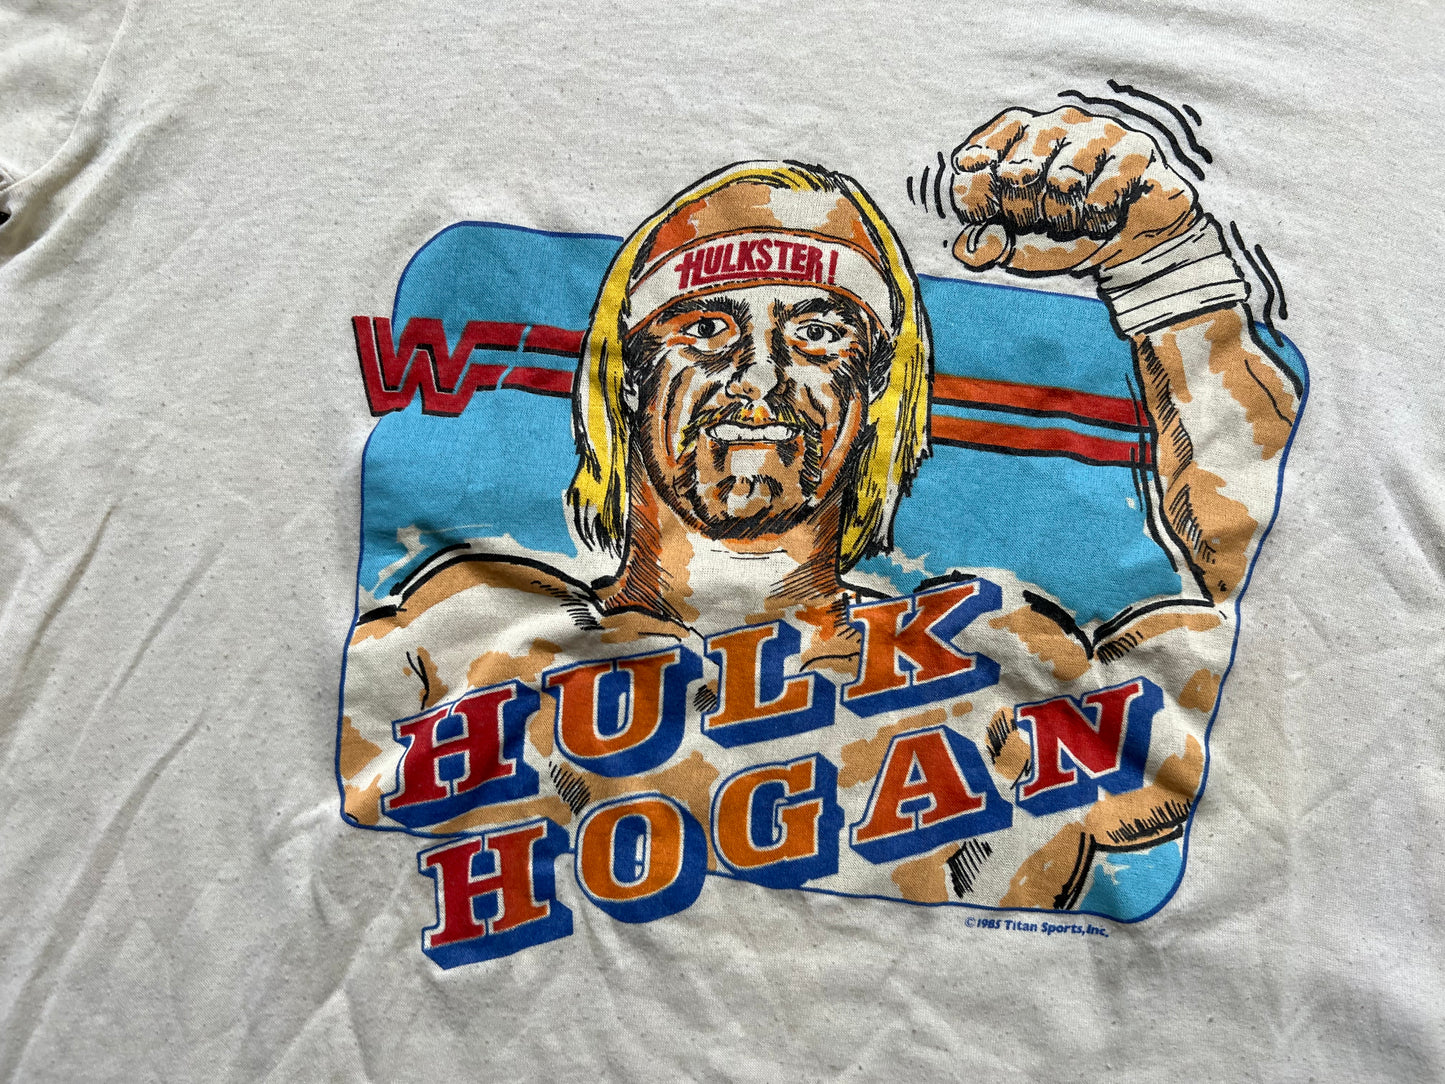 1985 WWF Hulk Hogan shirt